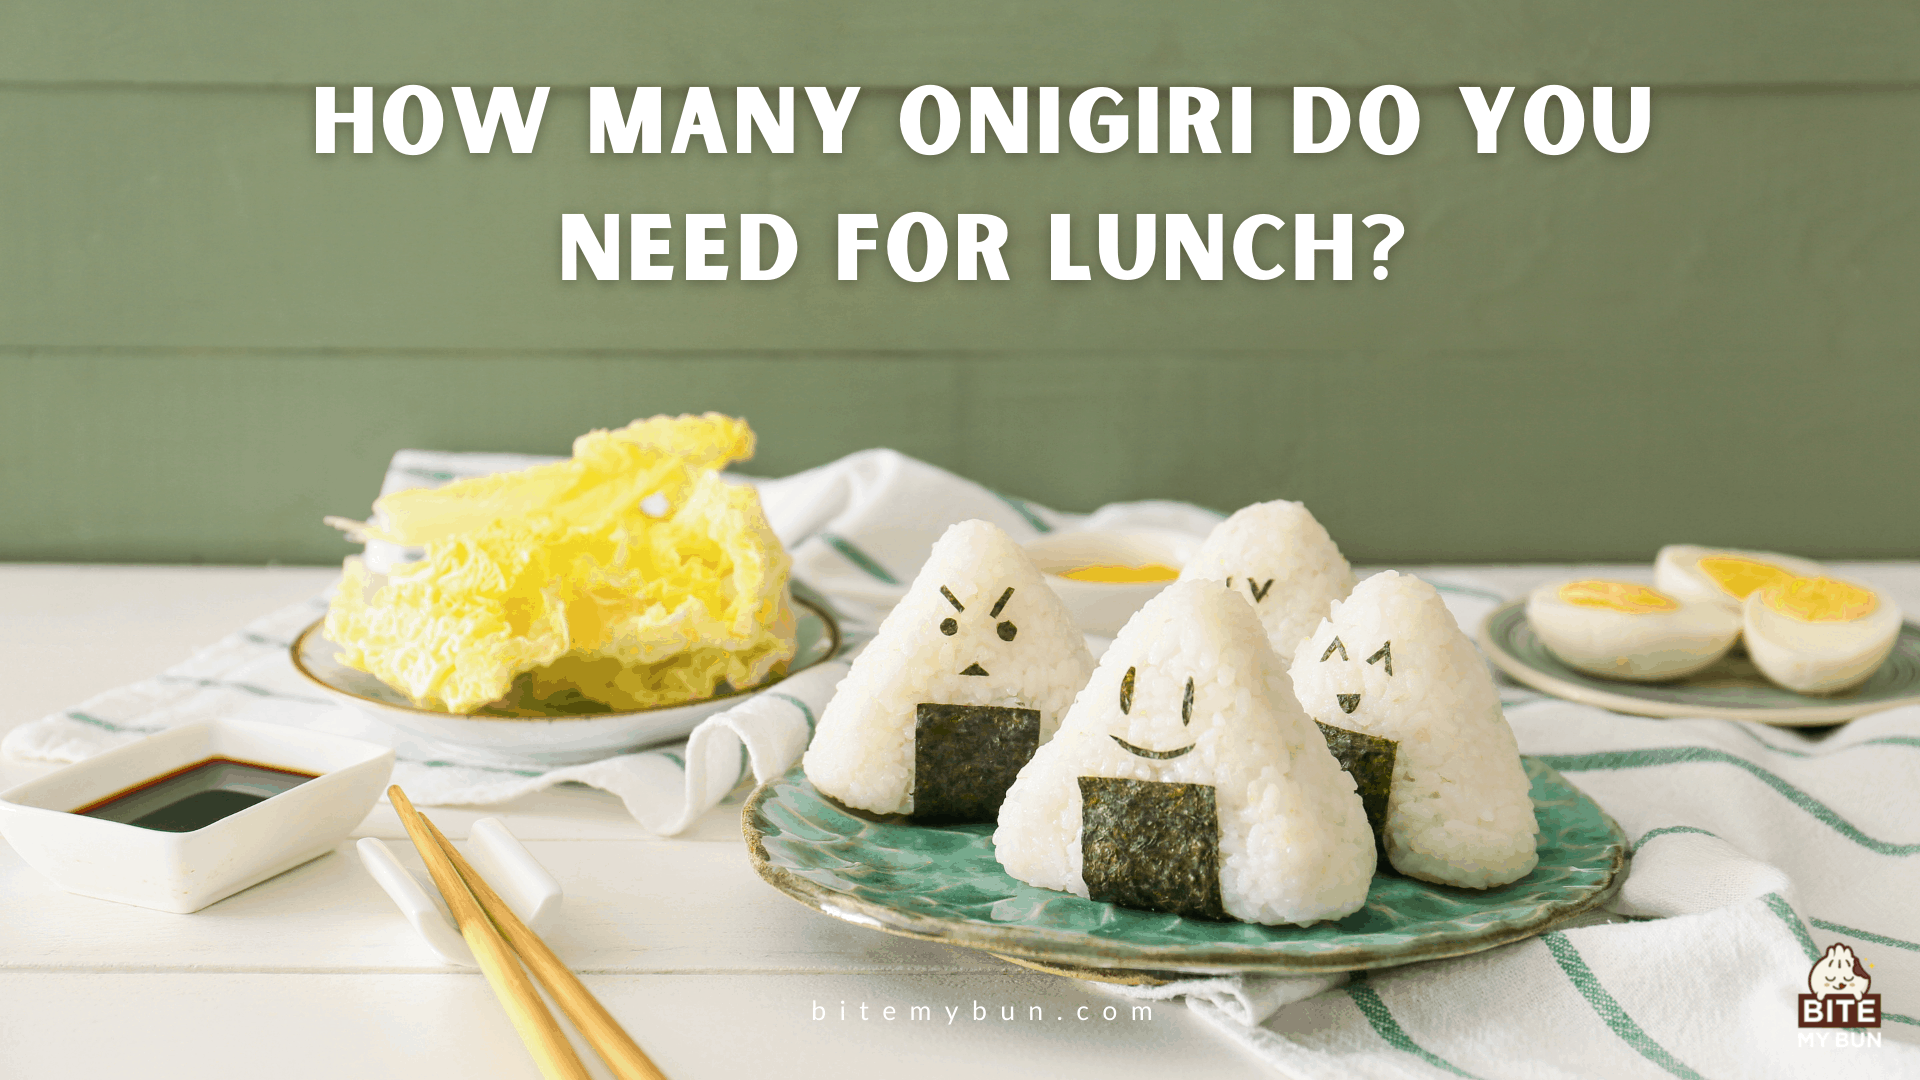 De combien d'onigiri avez-vous besoin pour le déjeuner ? Faites-en un repas complet comme celui-ci